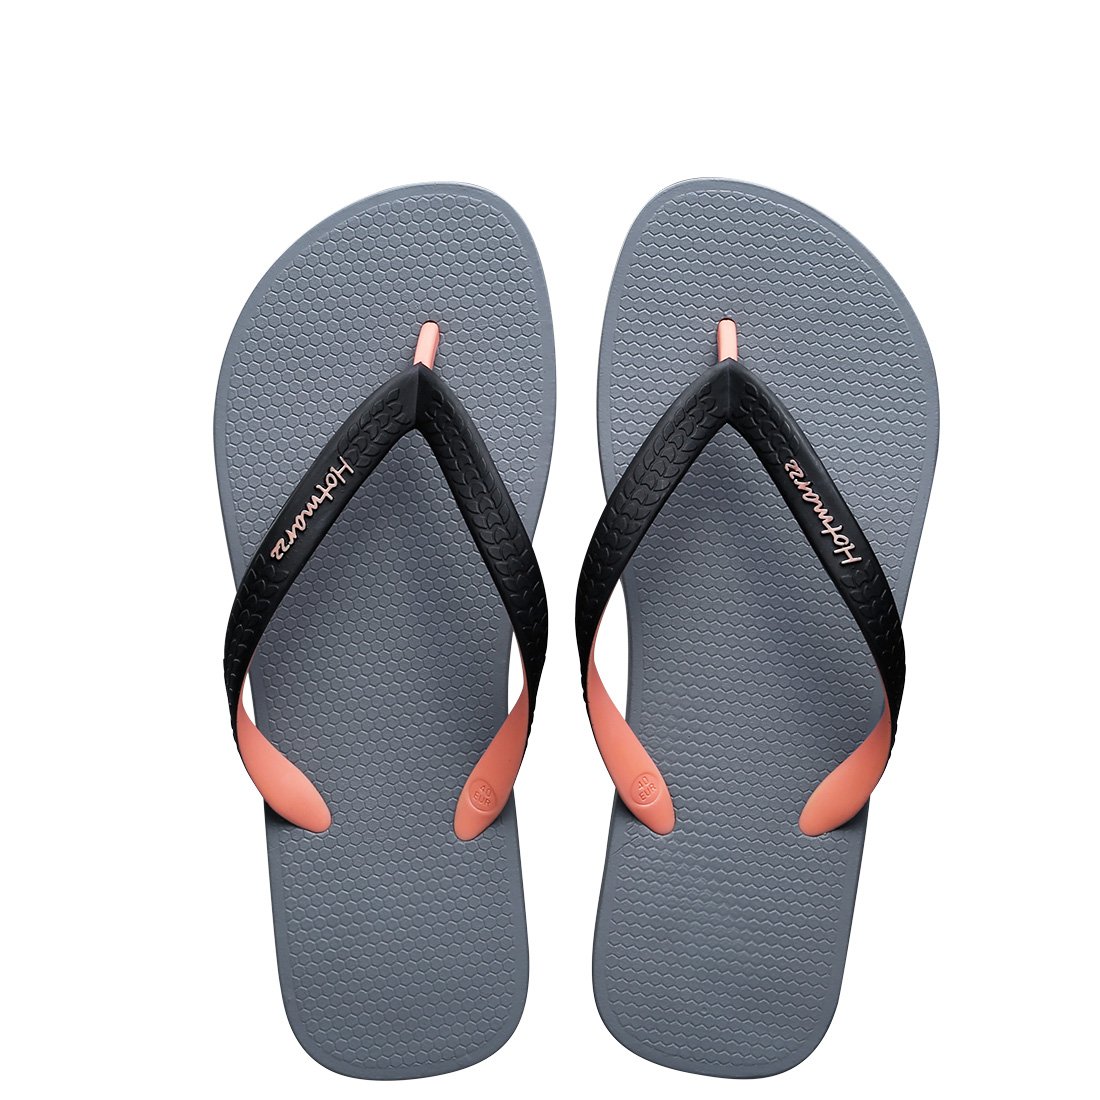 Hotmarzz Men's Flip Flops Sandals Shoes Slippers for Beach Shower Lightweight Comfort Thongs